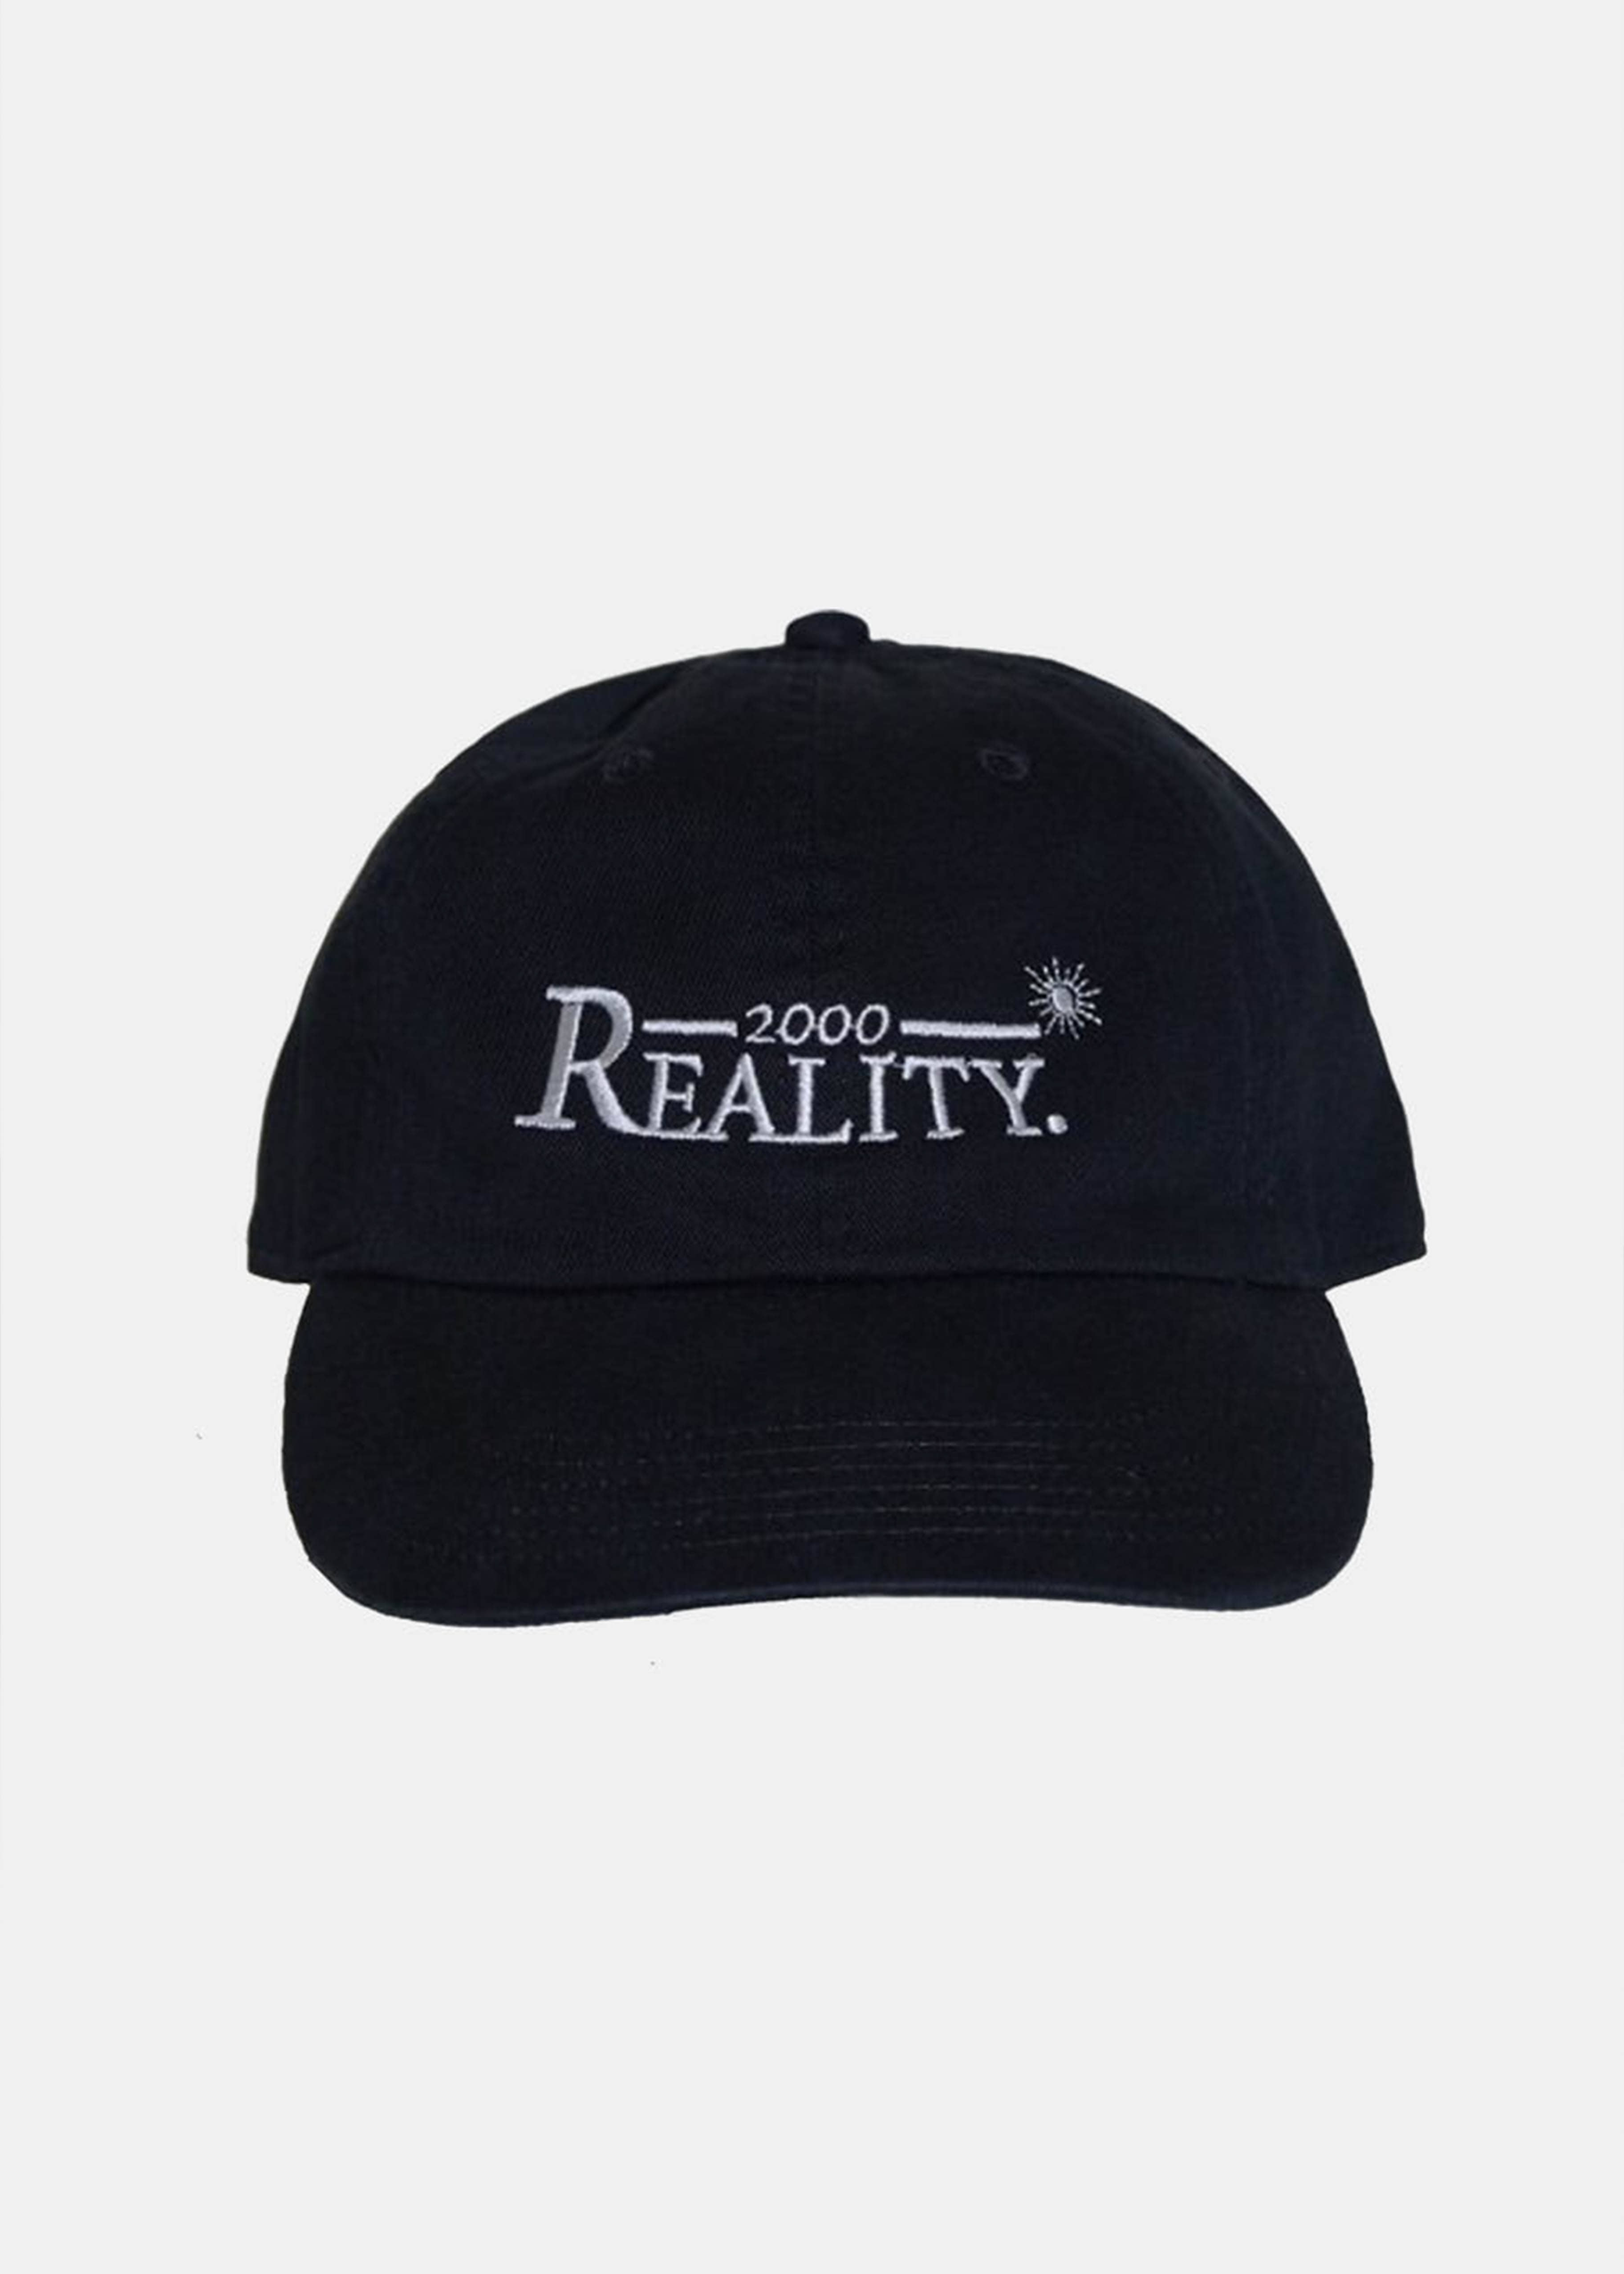 Reality cap